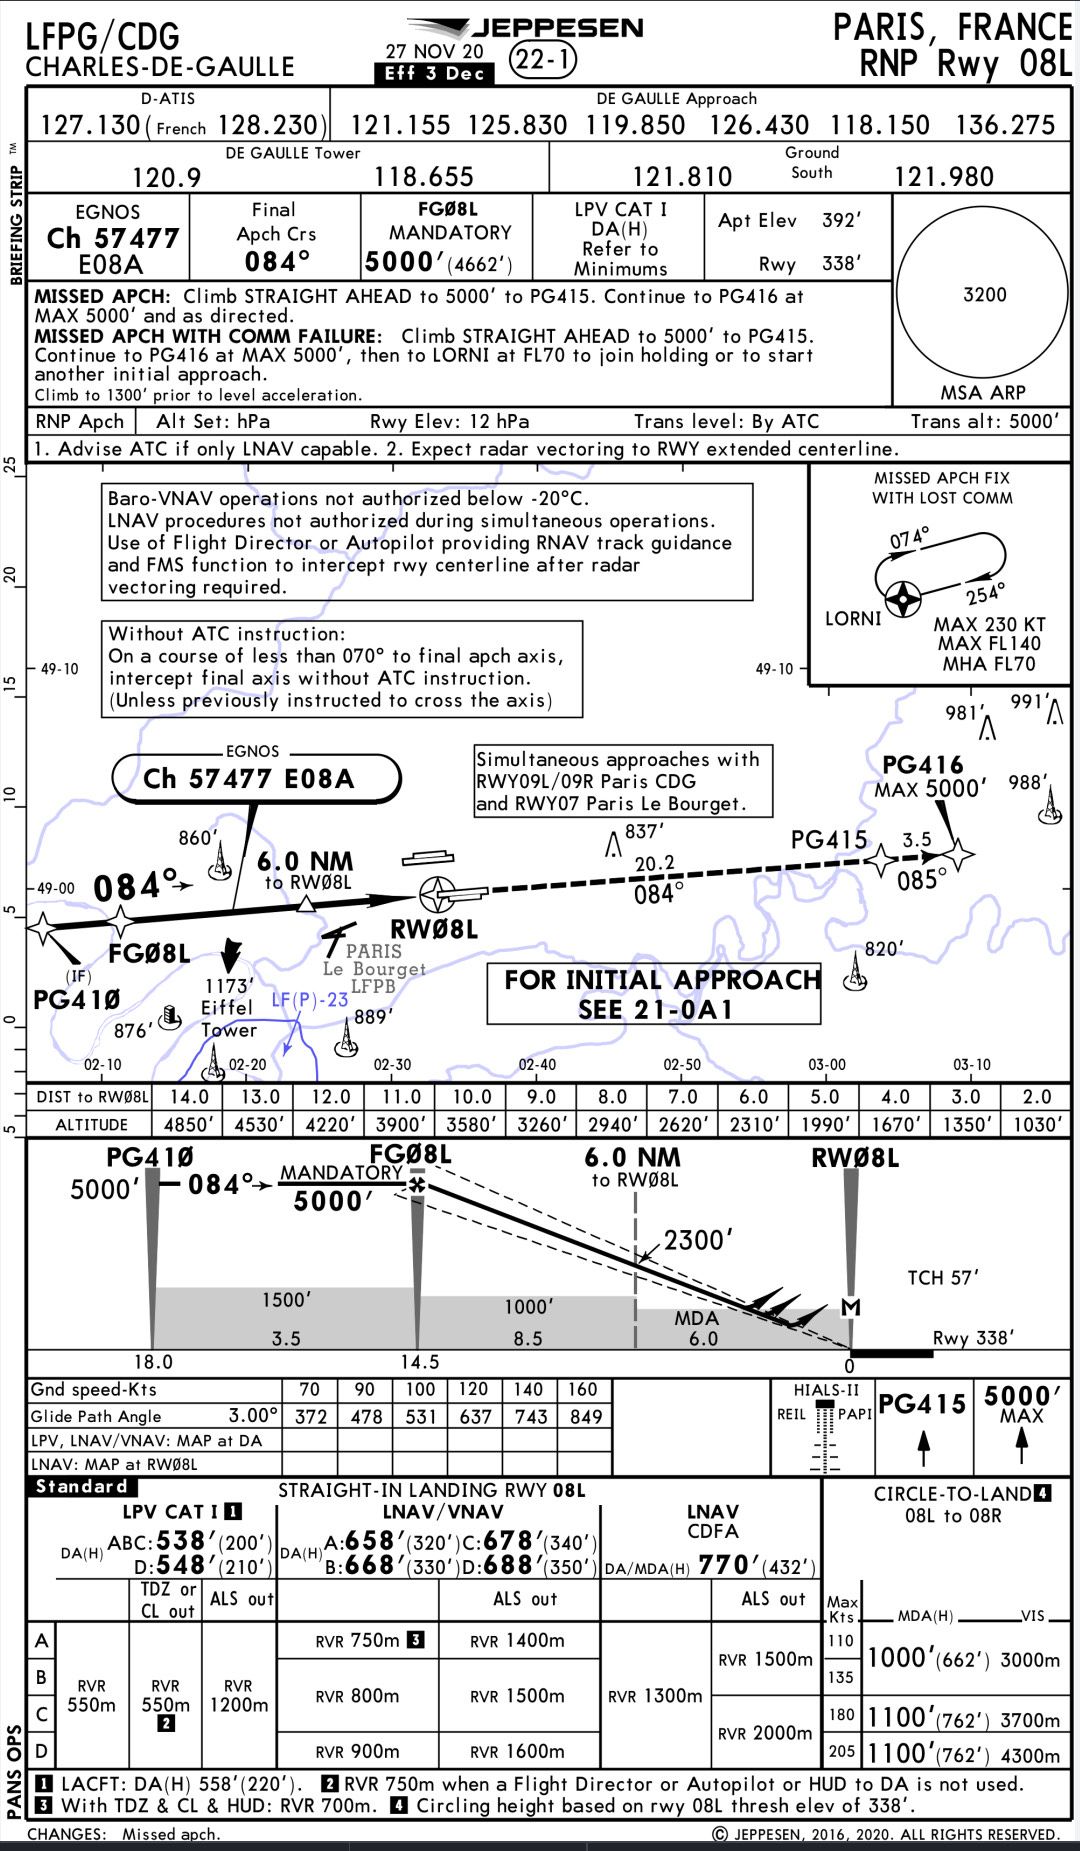 An LPV approach chart for Paris airport's Runway 08